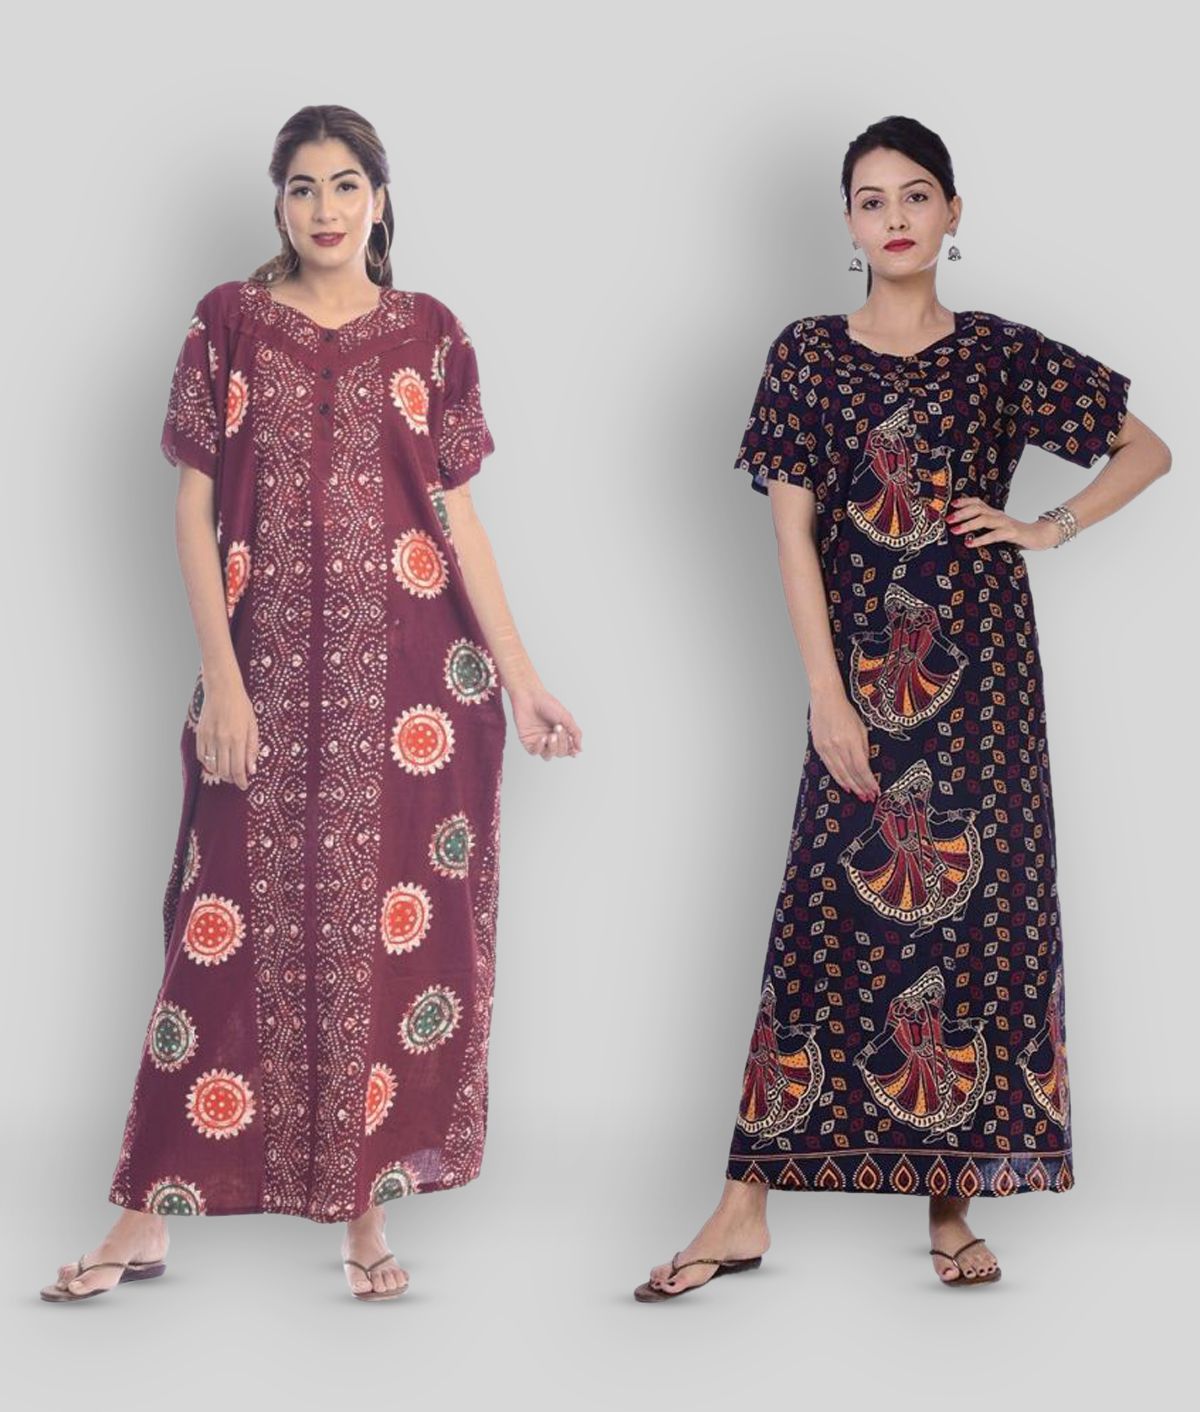     			Apratim - Multicolor Cotton Women's Nightwear Nighty & Night Gowns ( Pack of 2 )